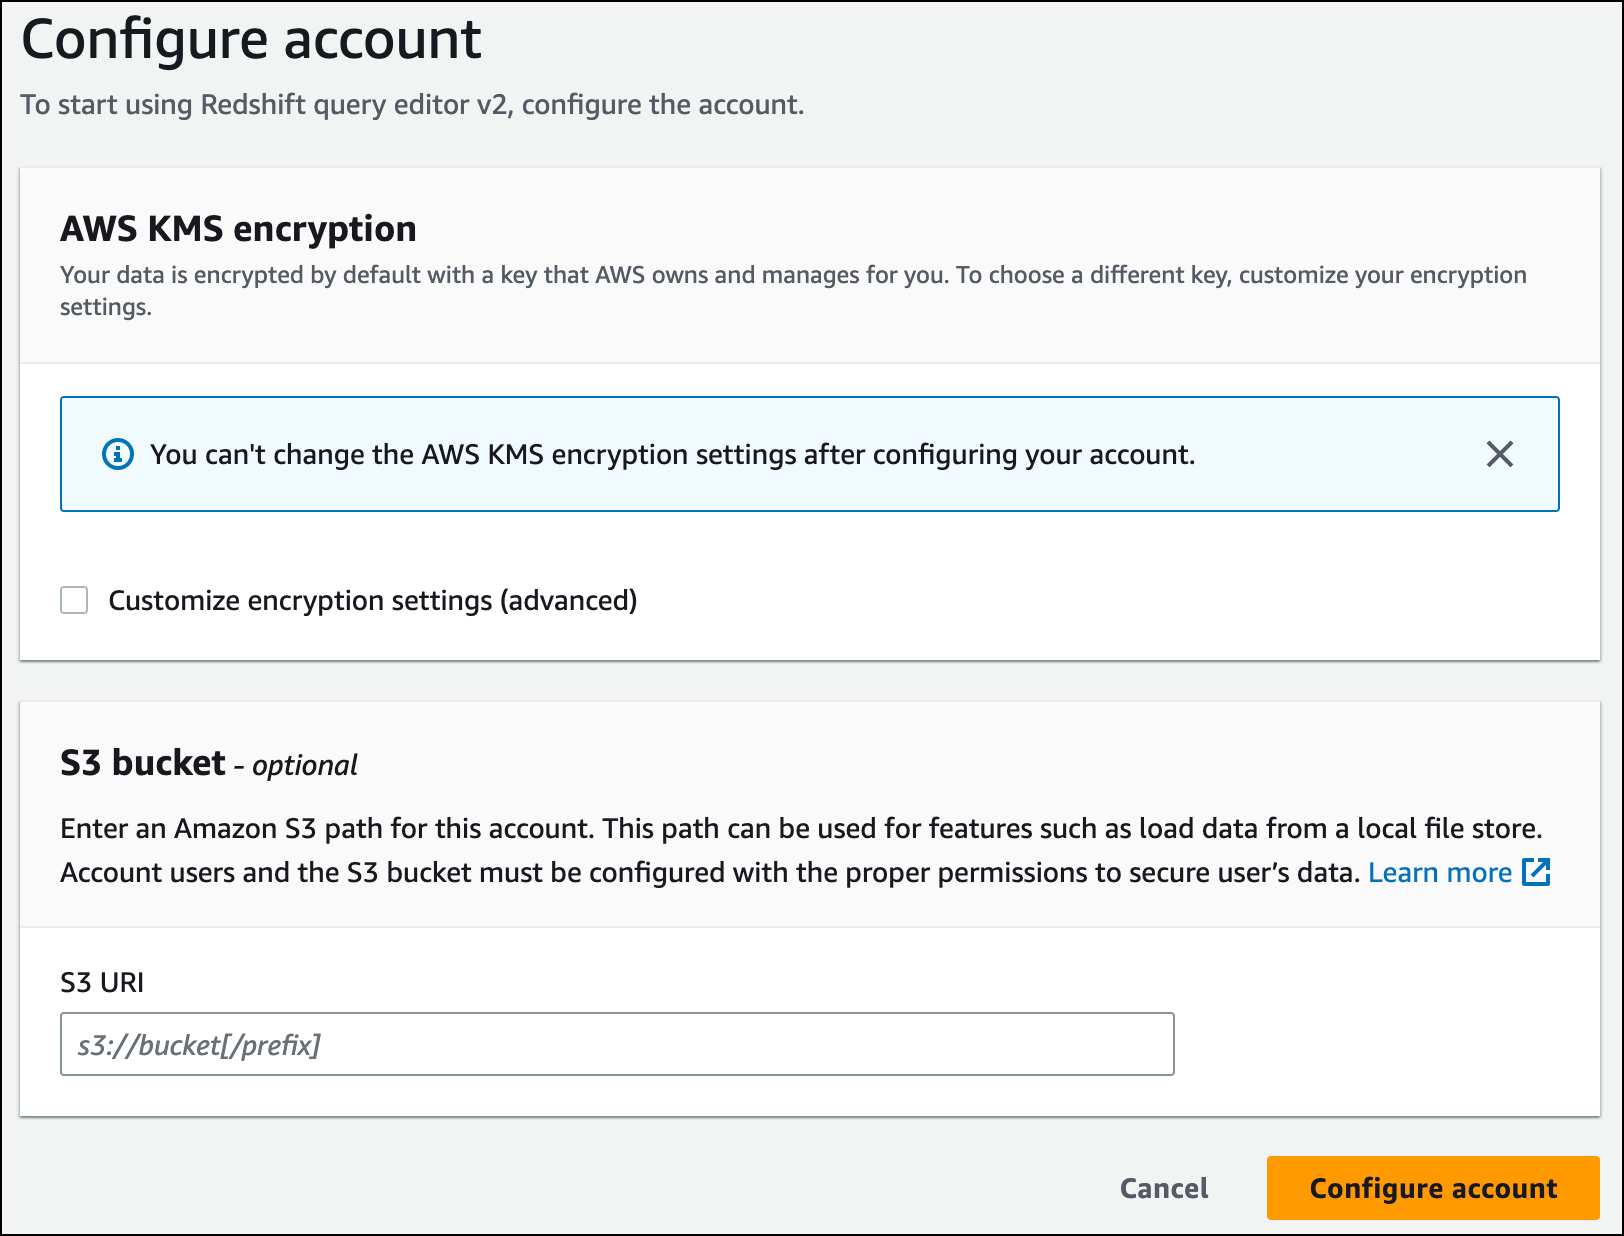 在继续操作之前，请配置 AWS KMS 加密并指定 S3 存储桶 URI。